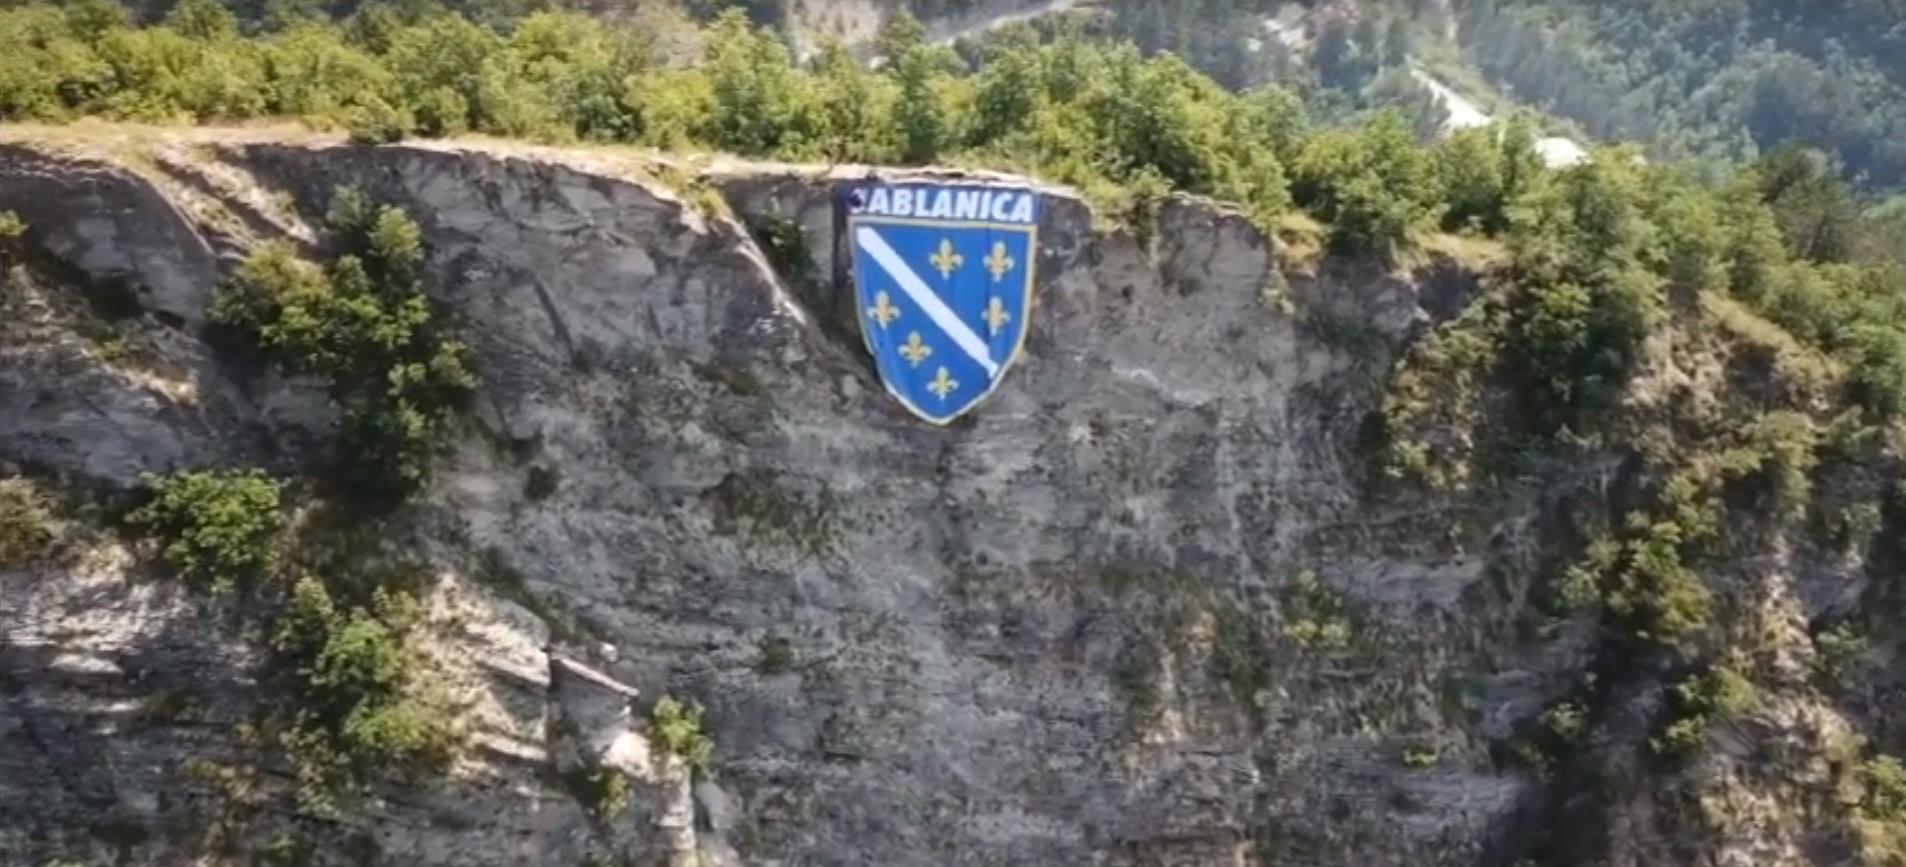 Ogromna zastava s ljiljanima postavljena iznad Jablanice